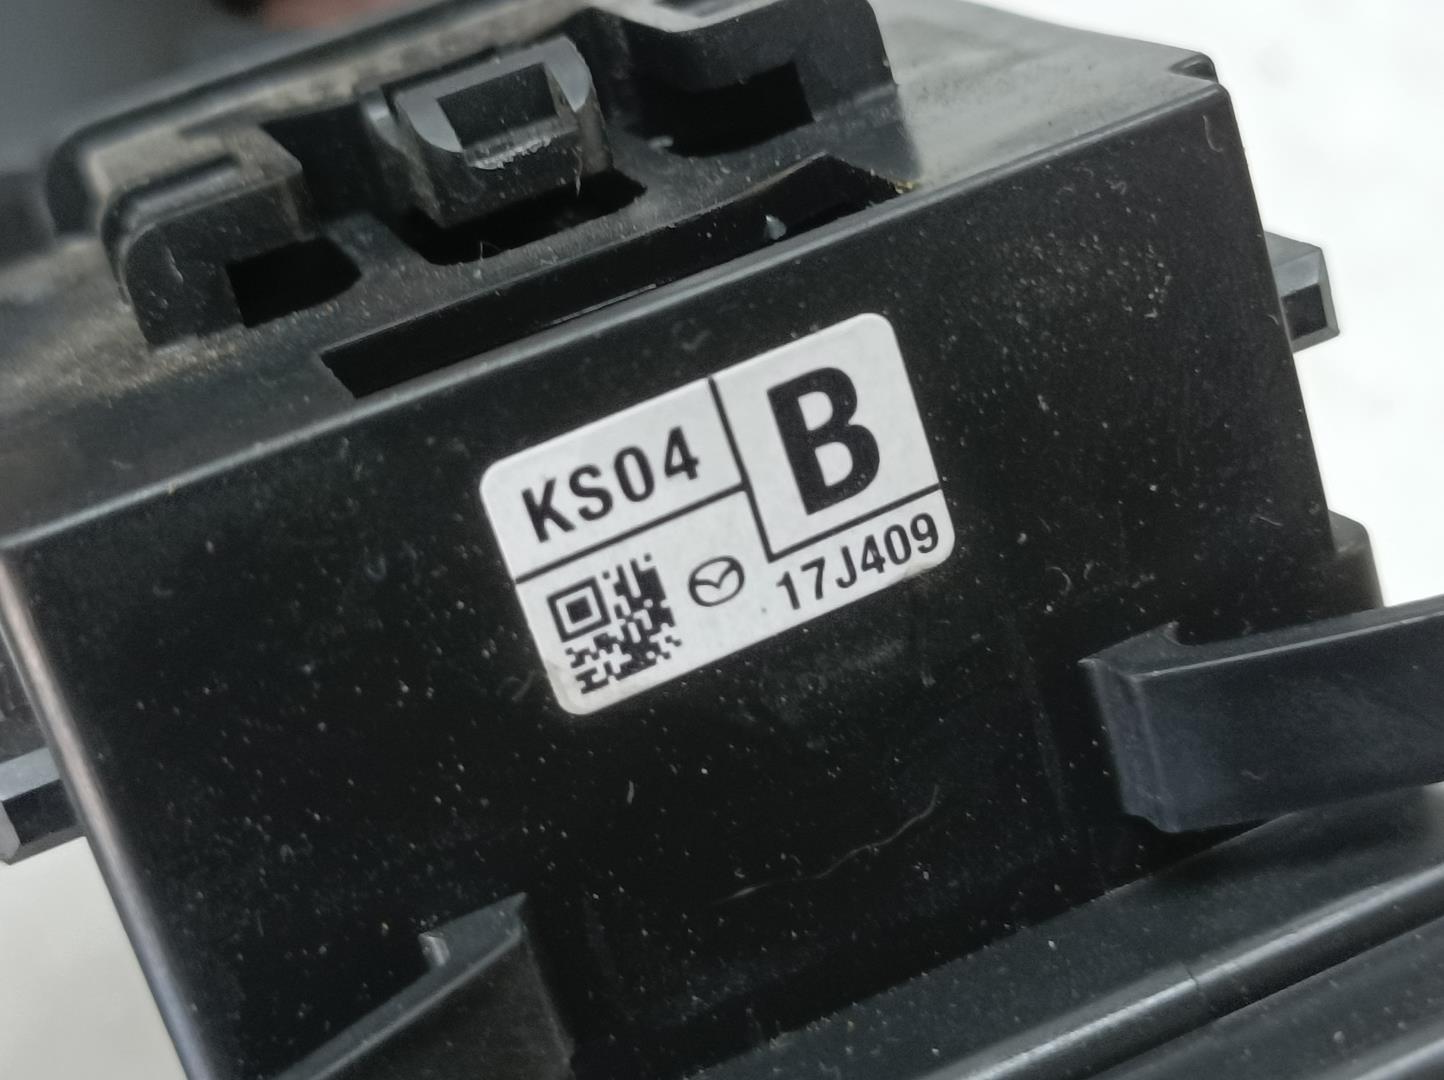 MAZDA 3 BM (2013-2019) Подрулевой переключатель KS04B, 17J409 24042084